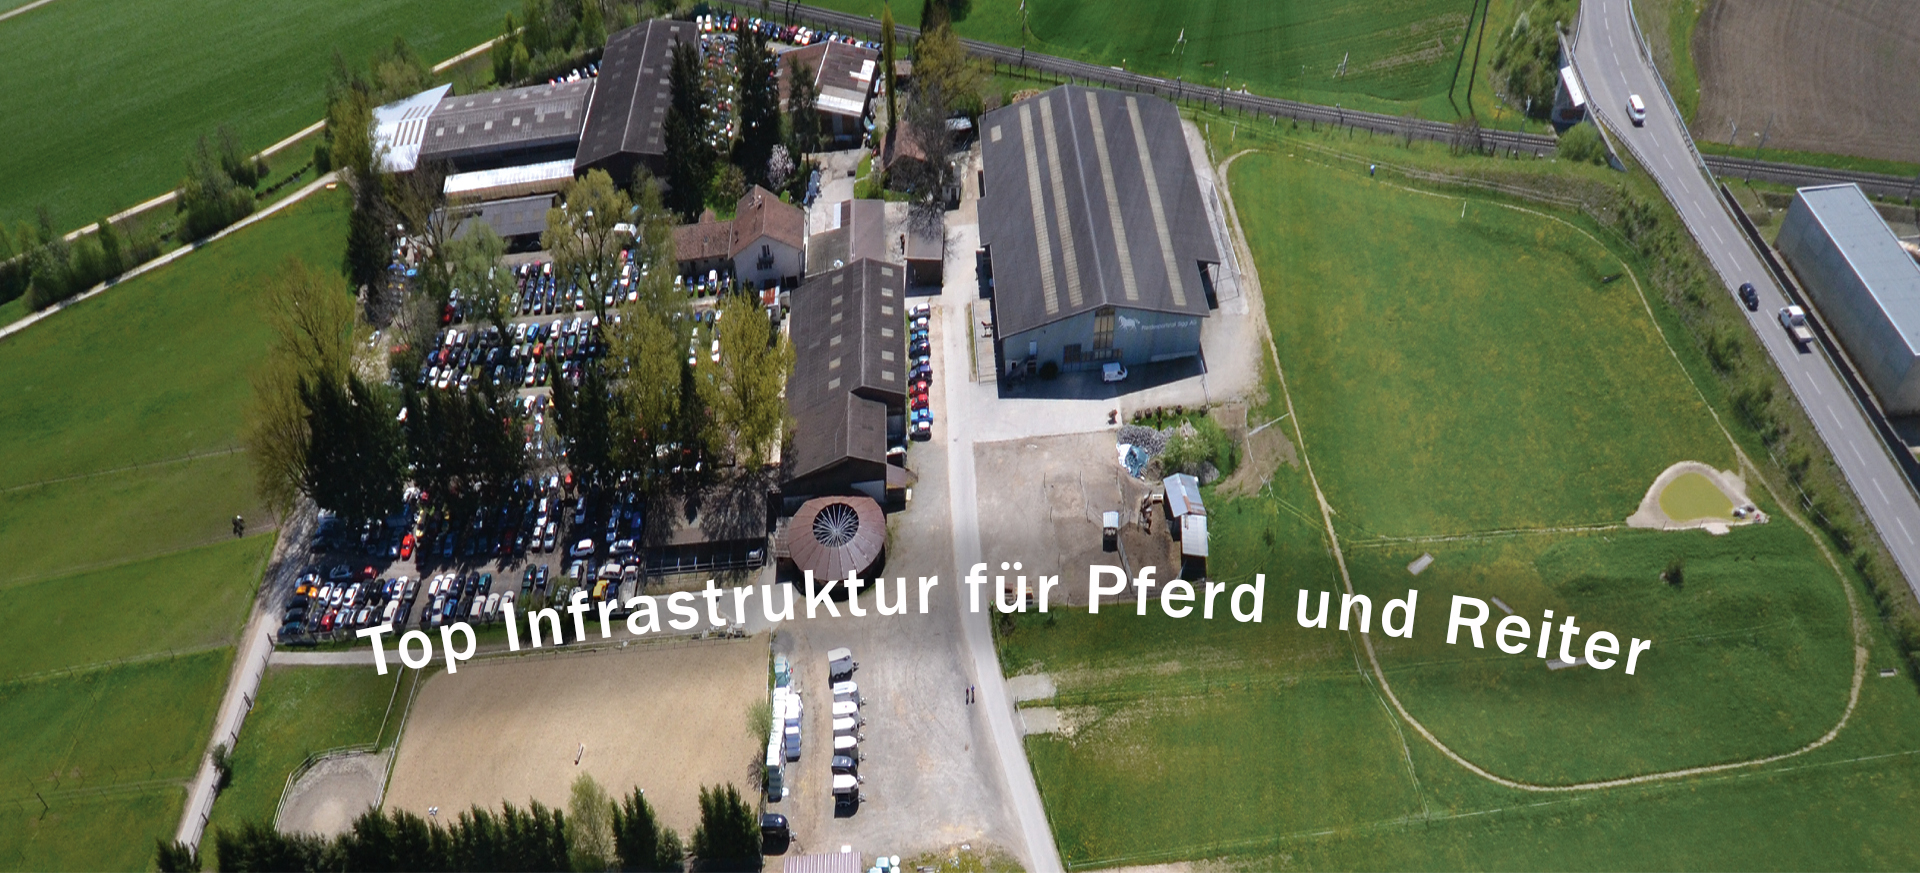 Top_Infrastruktur_Pferd_und_Reiter-2020